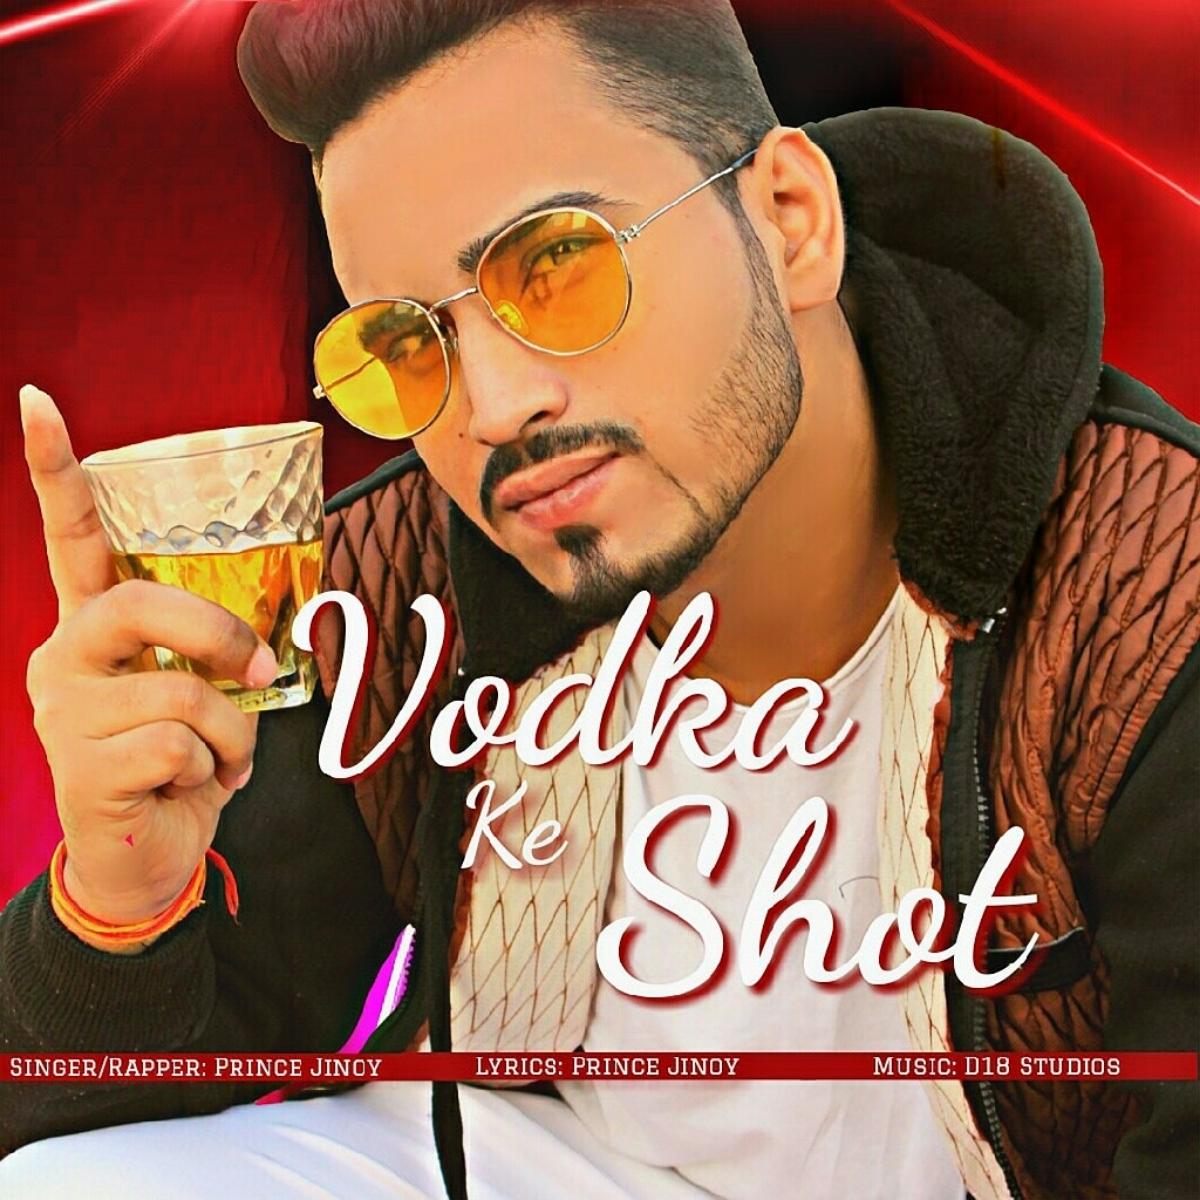 Vodka Ke Shot